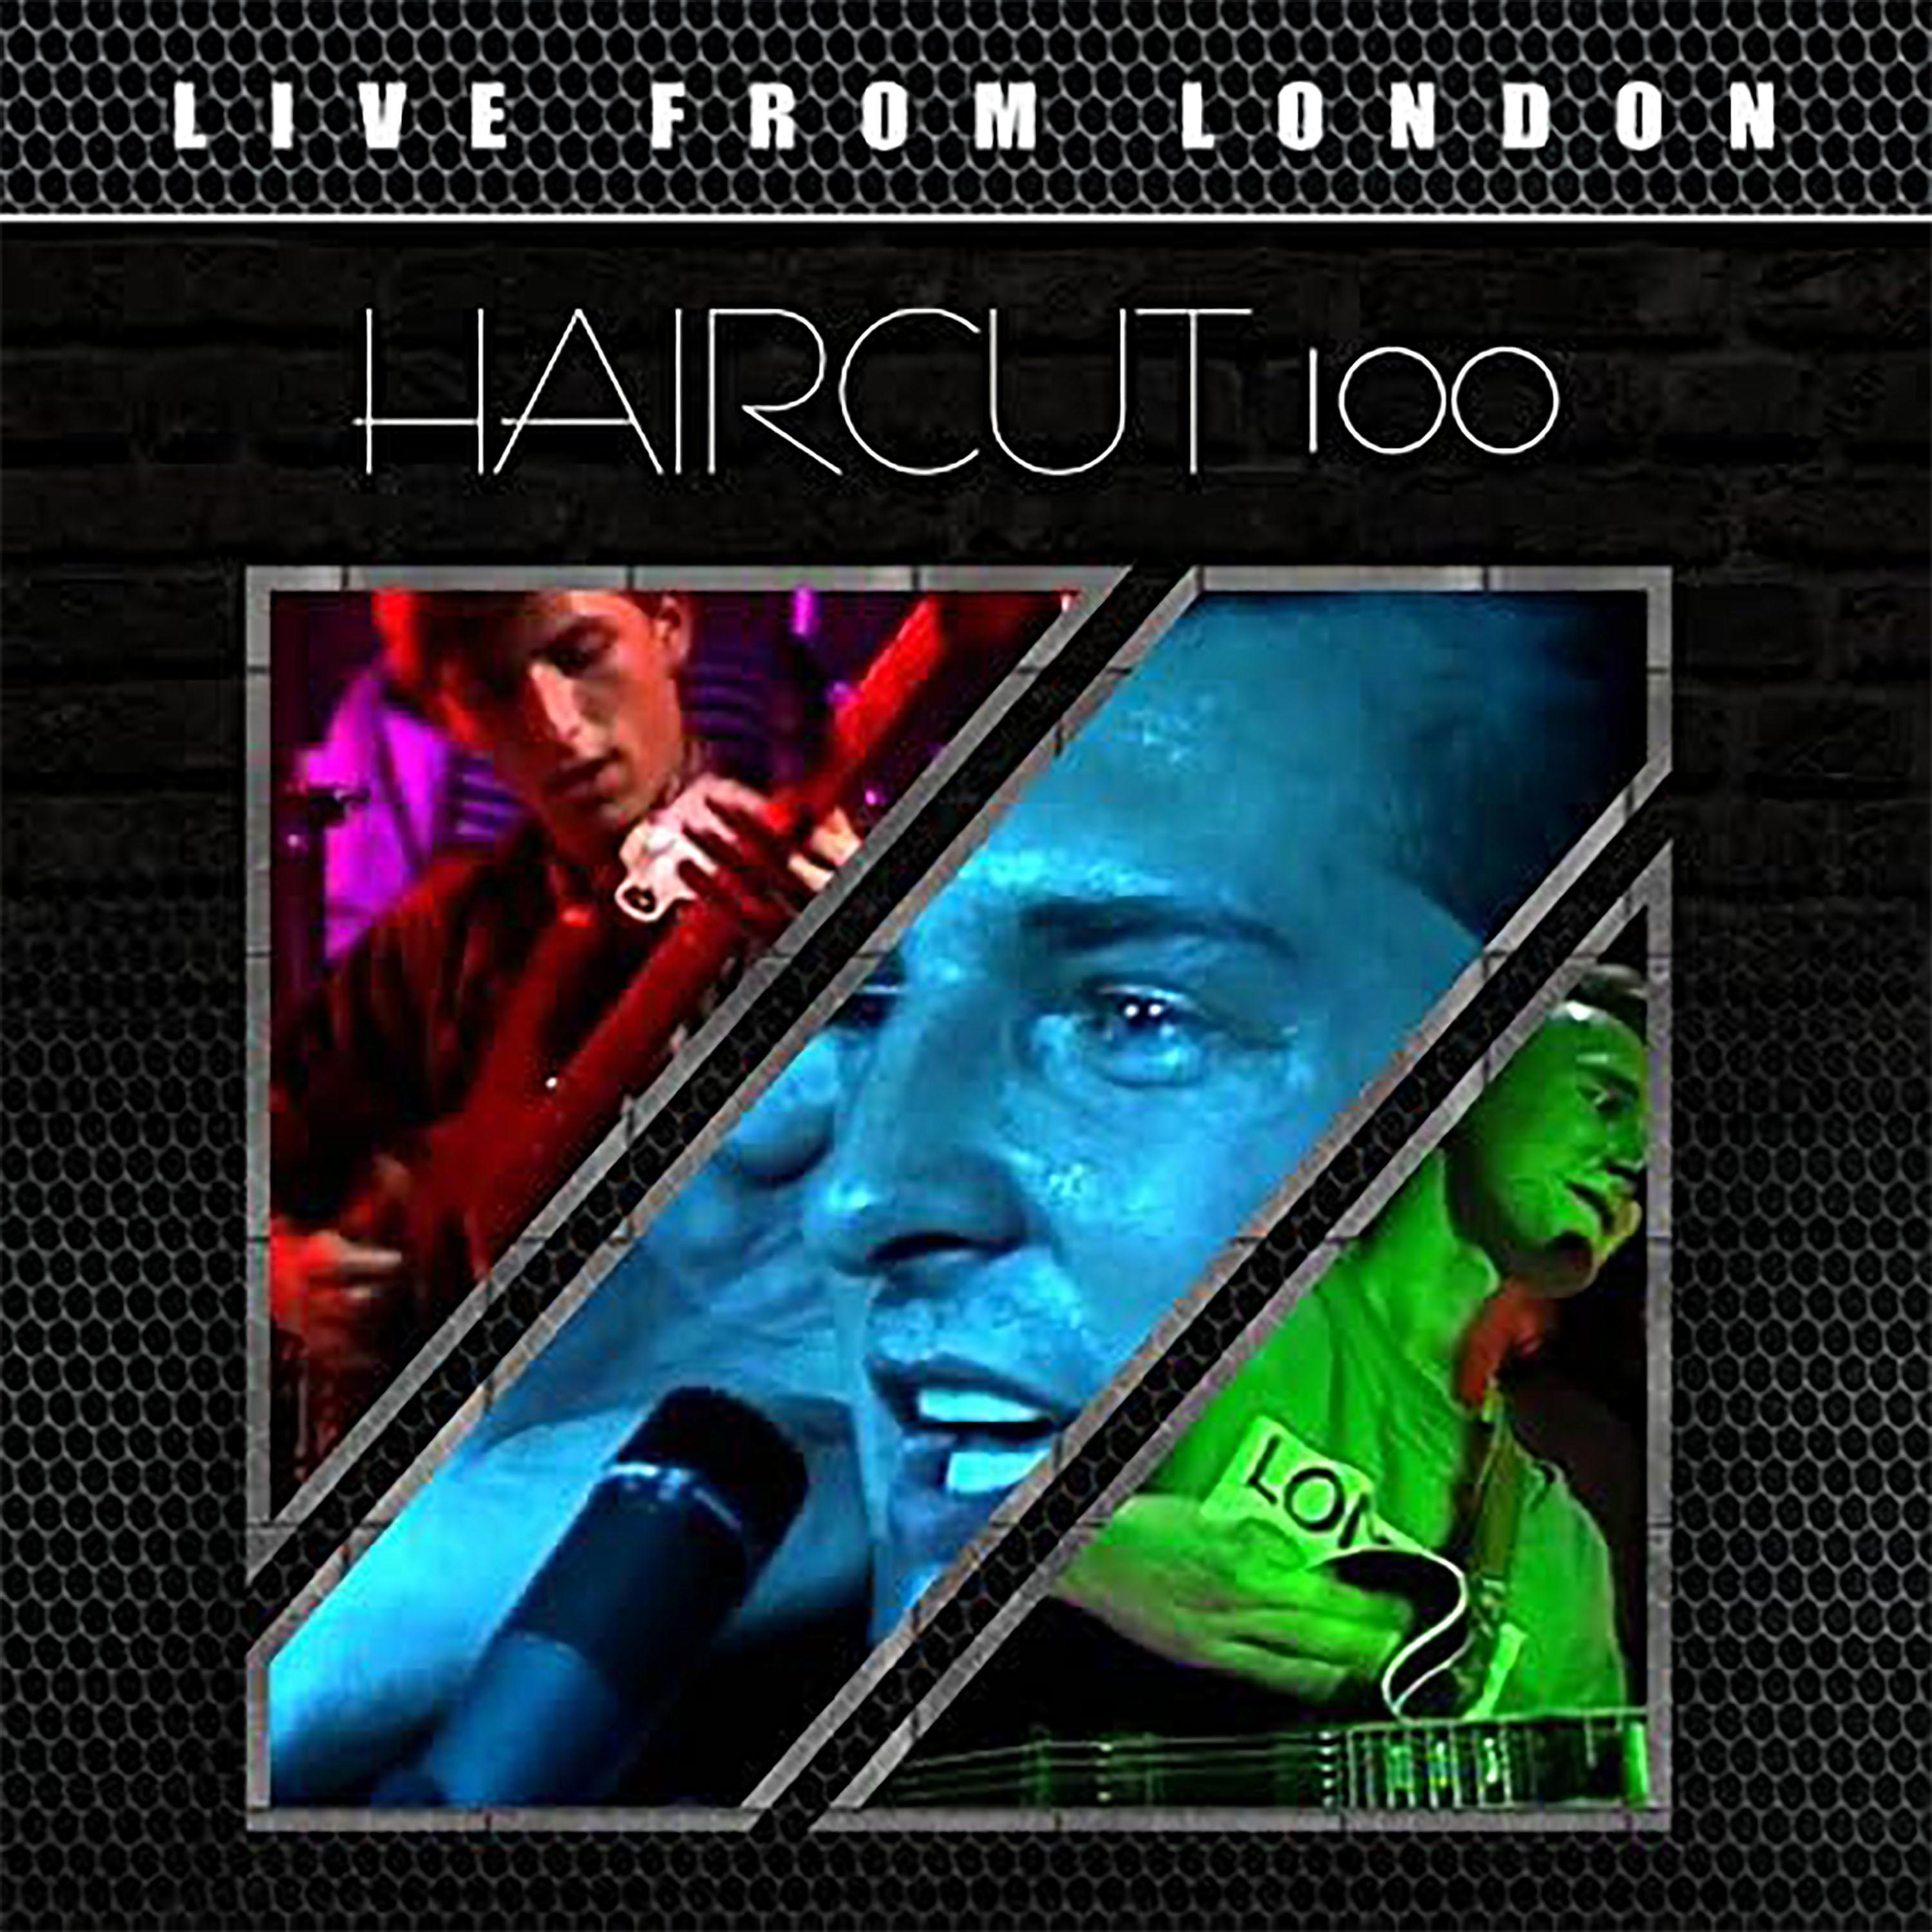 Haircut 100 - Infatuation (Live)